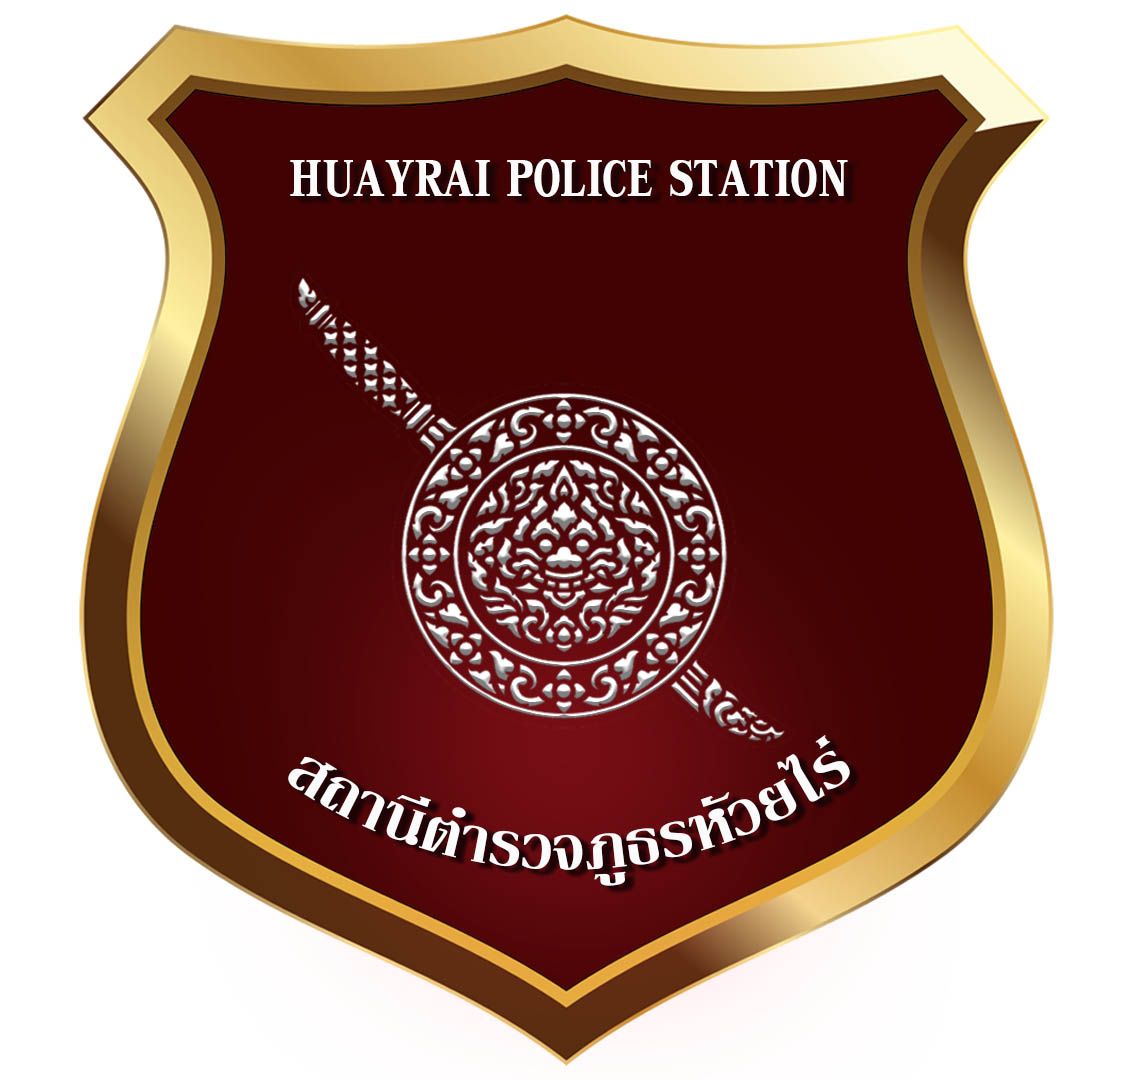 สถานีตำรวจภูธรห้วยไร่ logo